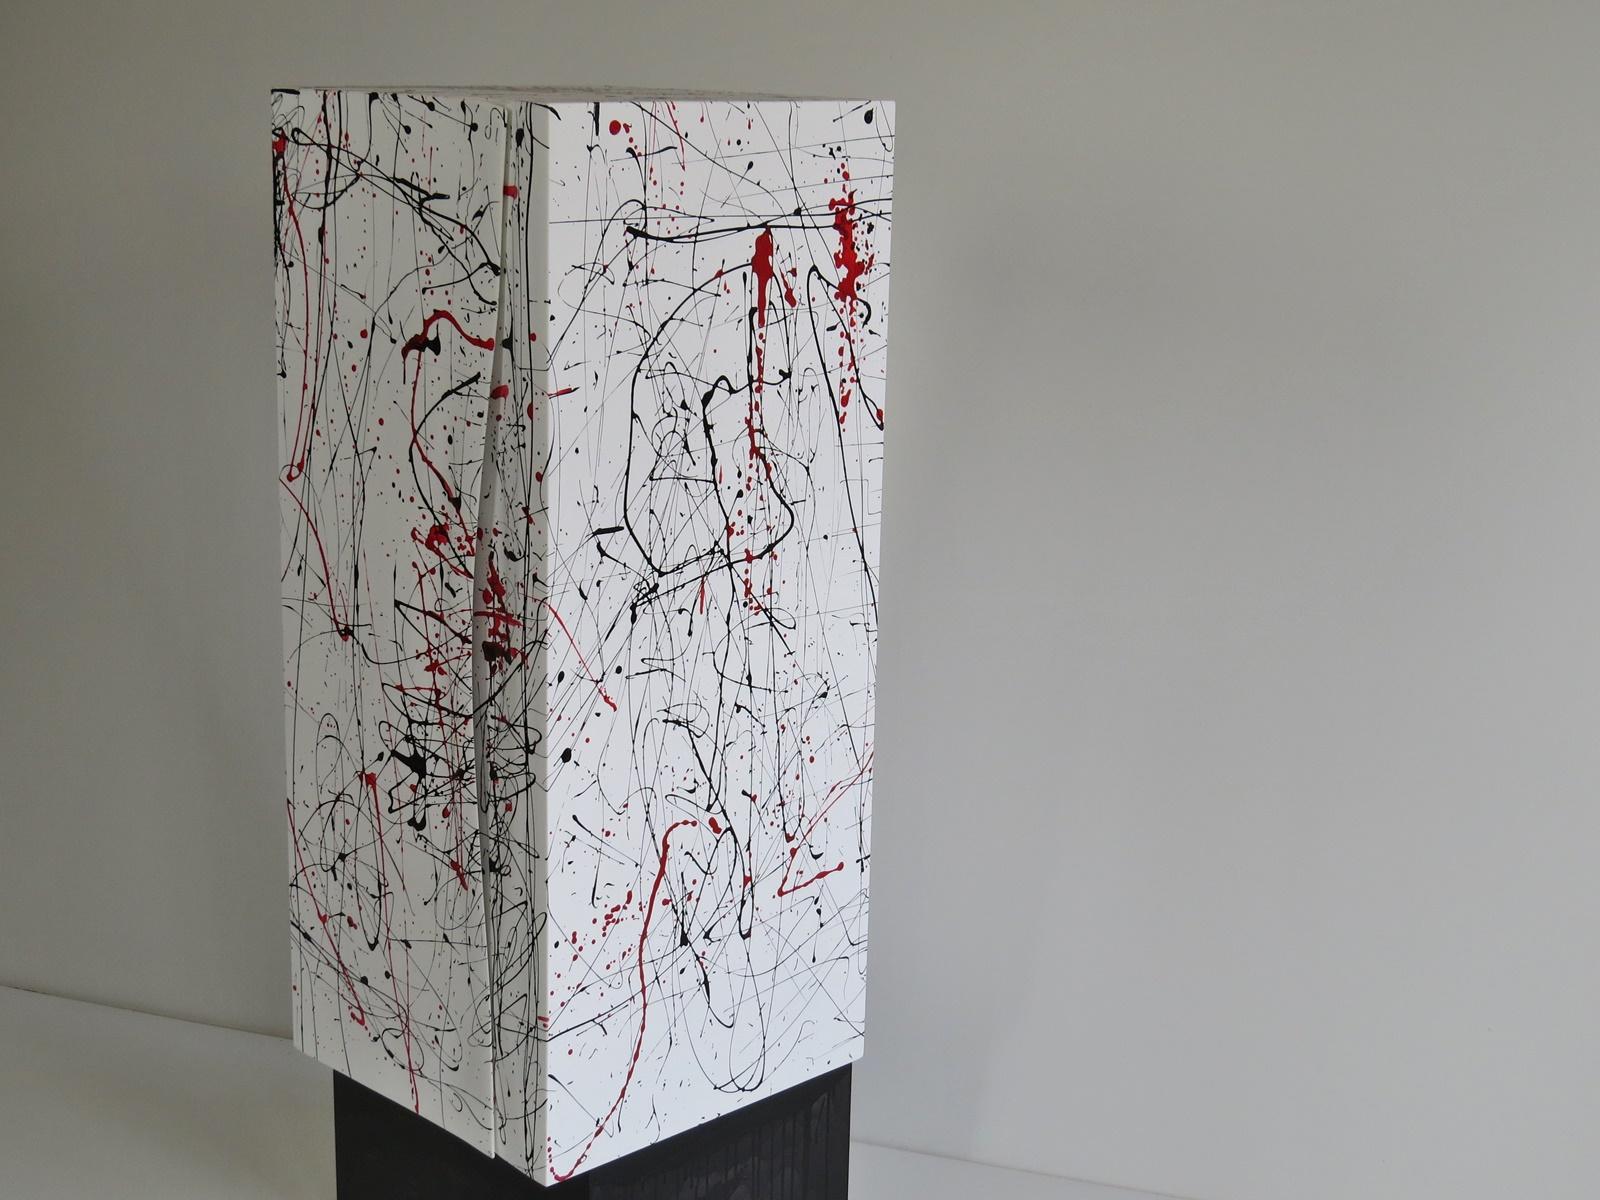 Handgefertigte Würfelmöbel
skulpturale Möbel praktisch und Blickfang zugleich!
Kunstwerk als Hommage an Jackson Pollock
Der weiße Kubus mit integrierten Türen steht versetzt auf einem schwarzen Sockel.
Darin befinden sich 2 Regale.
Verziertes